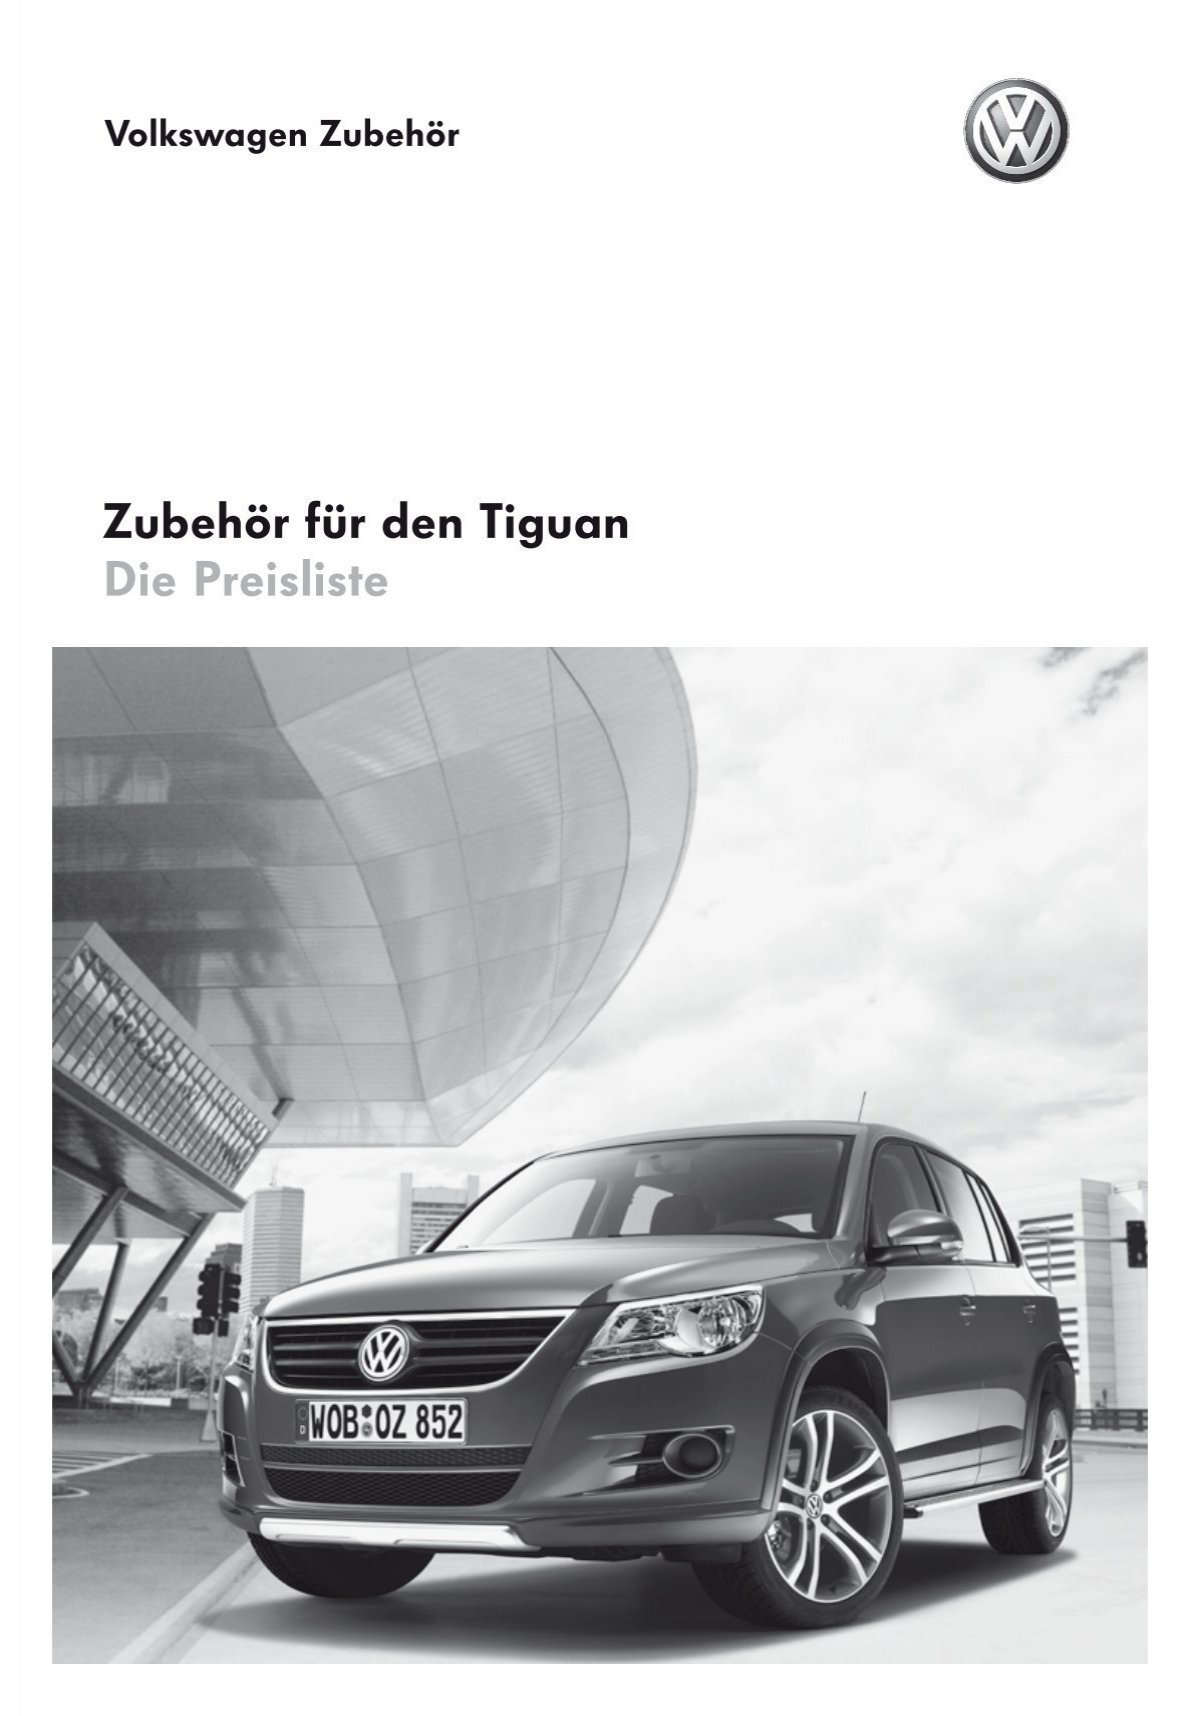 Unterfahrschutz für den VW Tiguan als Zubehör ab Werk